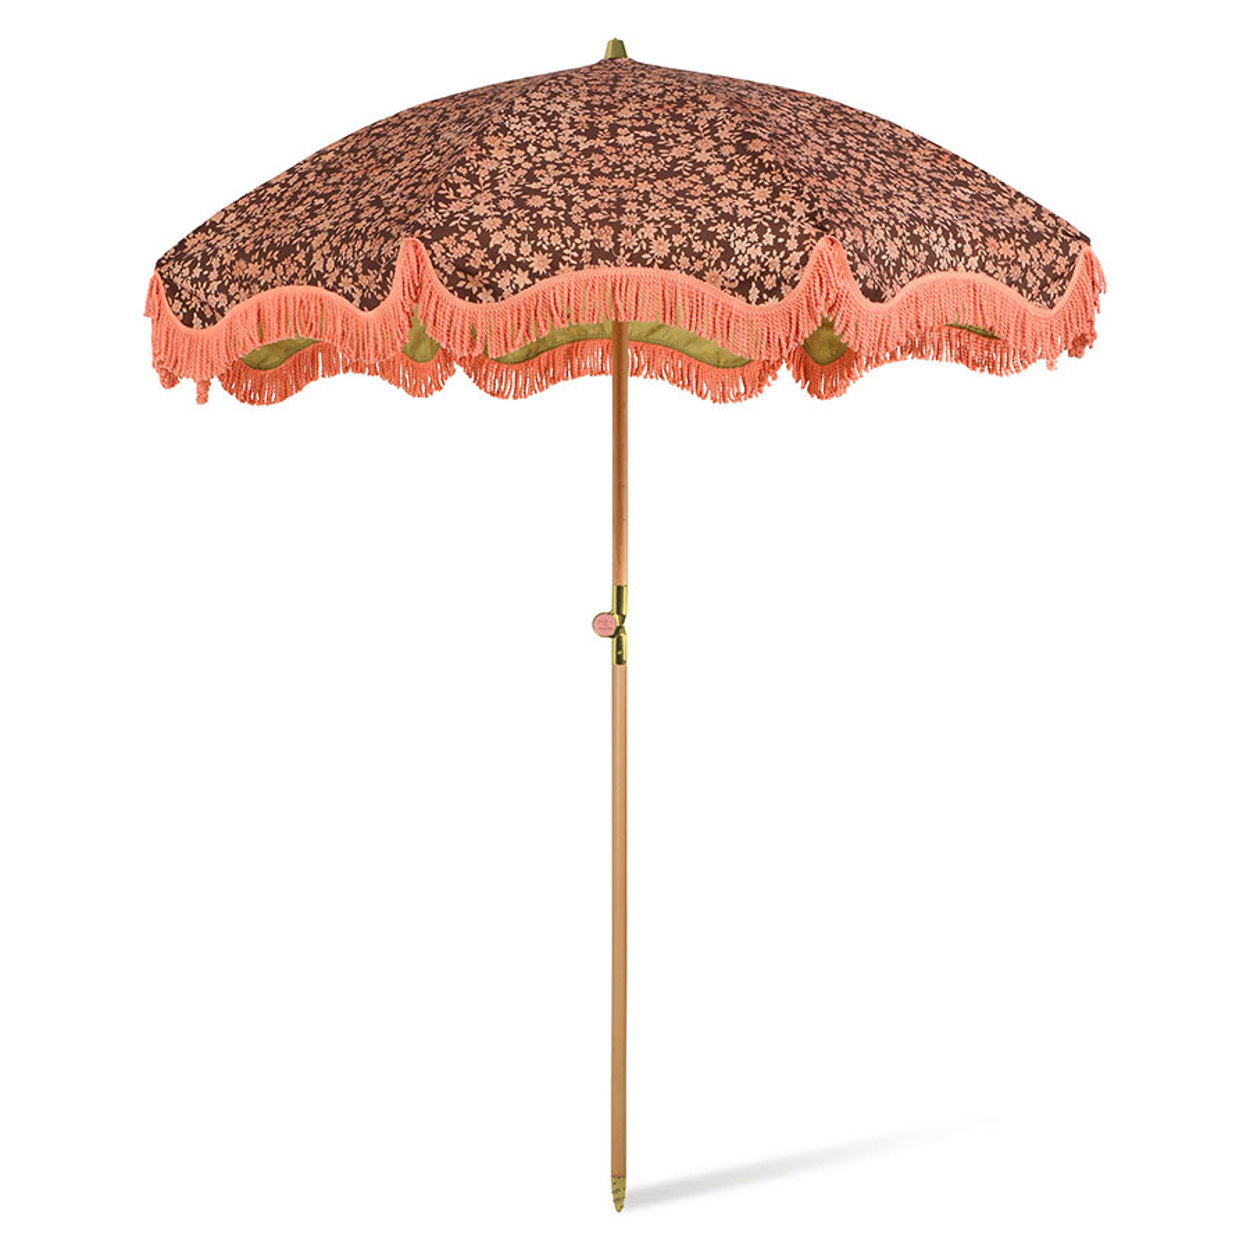 DORIS for HKLIVING: beach umbrella vintage floral